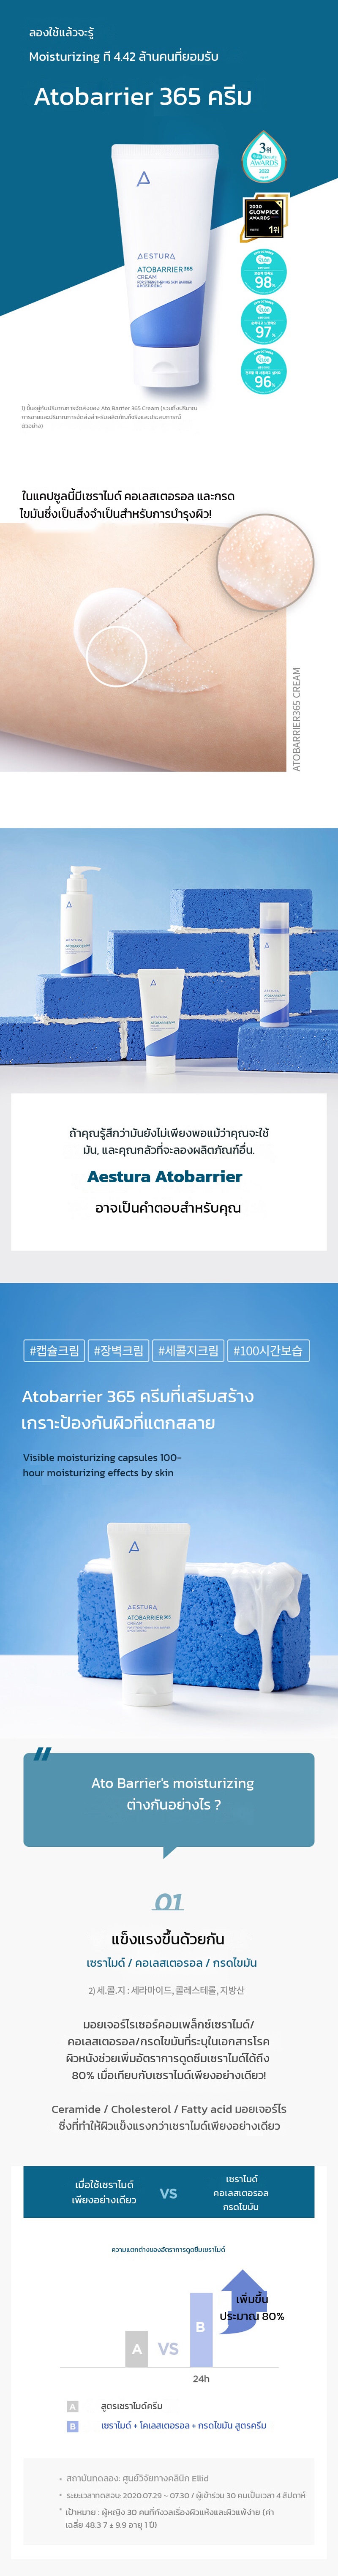 Aestura-Atobarrier365-Cream (80ml) - Aestura Atobarrier365 Cream en1